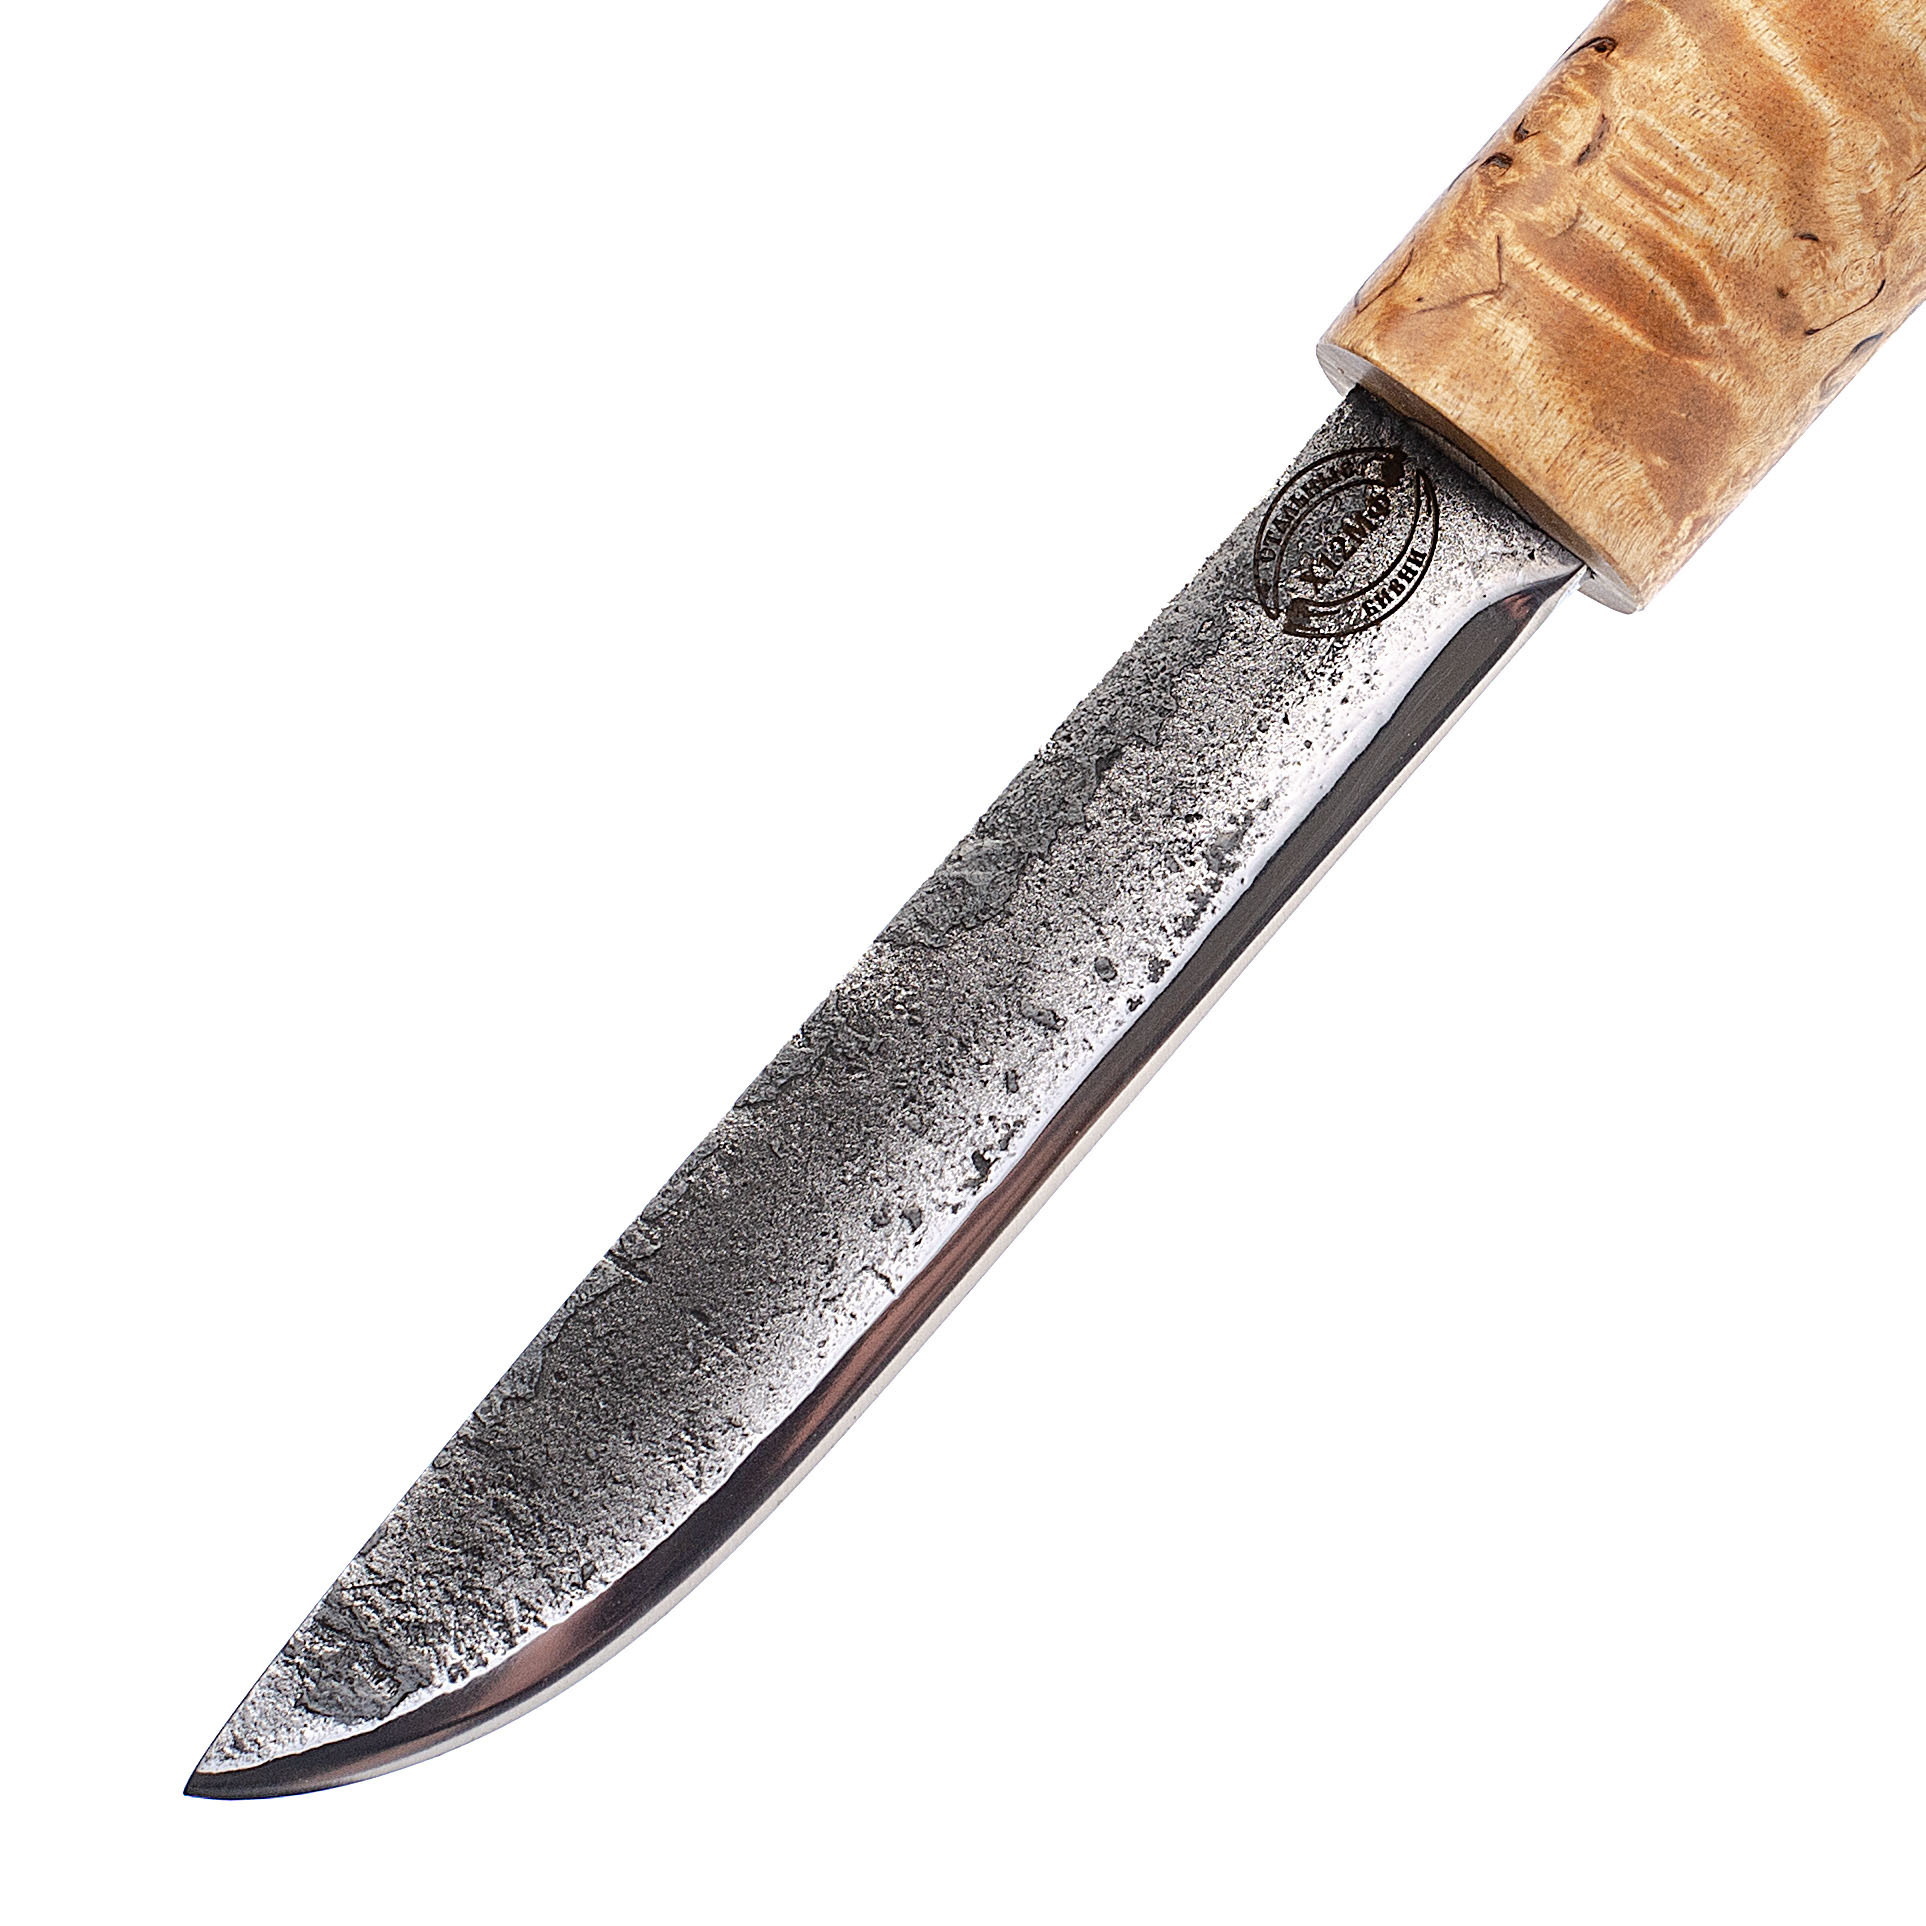 Нож Ханты-Манси в деревянных ножнах, сталь Х12МФ, берёзовый кап, венге-береста от Ножиков